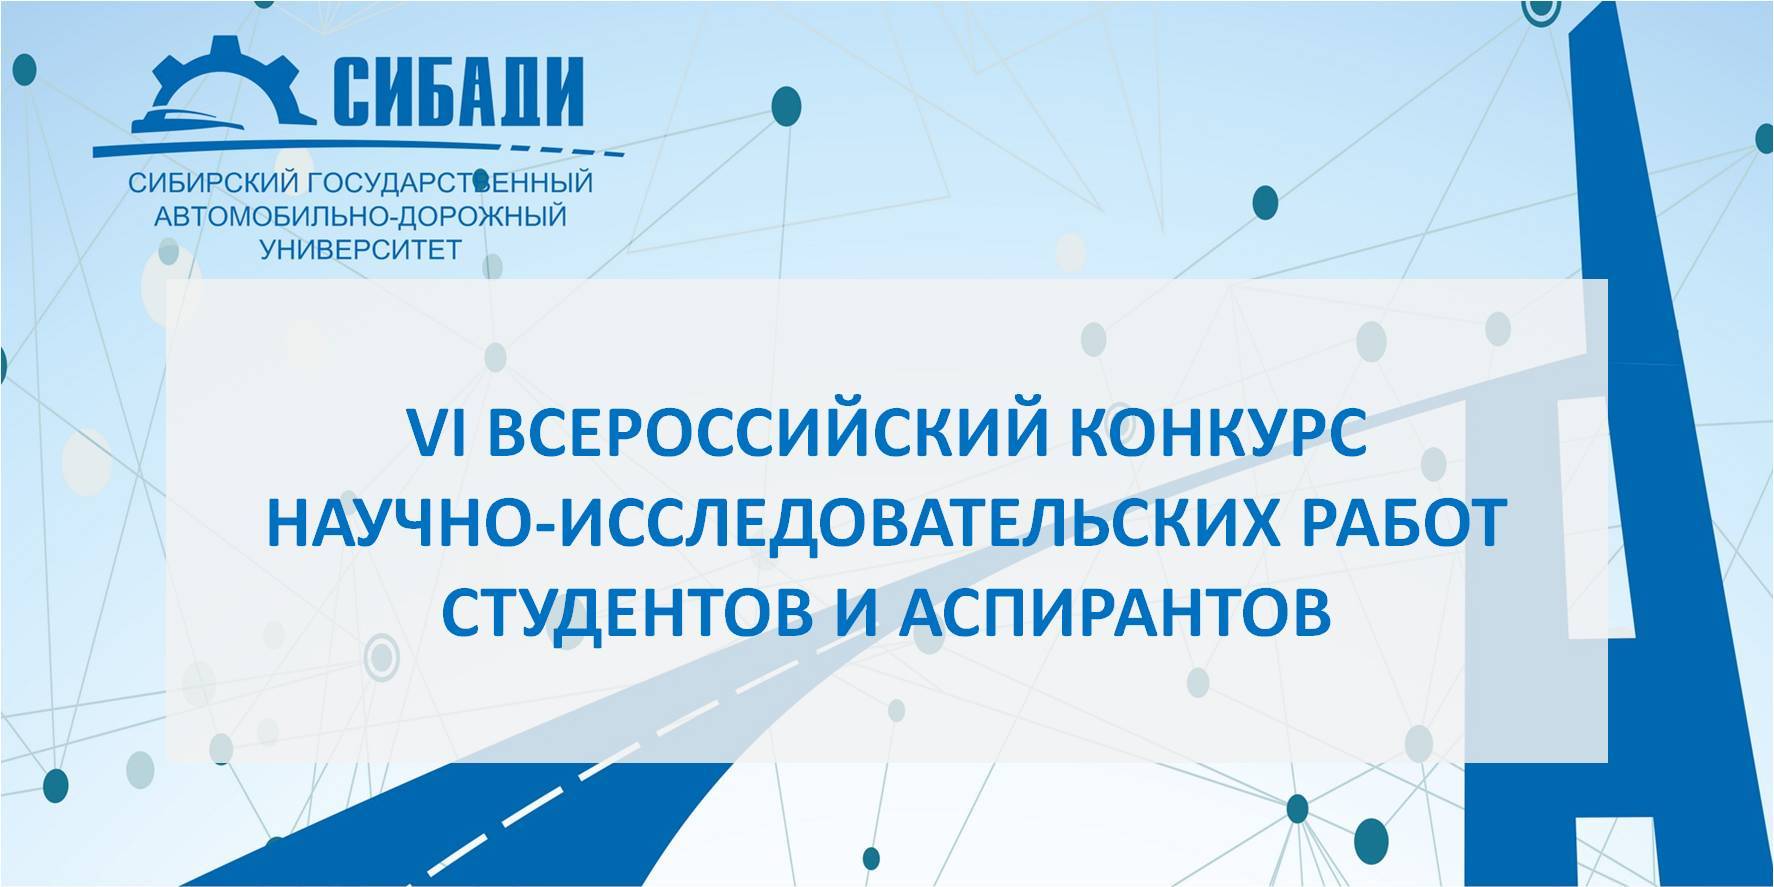 VI Всероссийский конкурс научно-исследовательских работ студентов и аспирантов